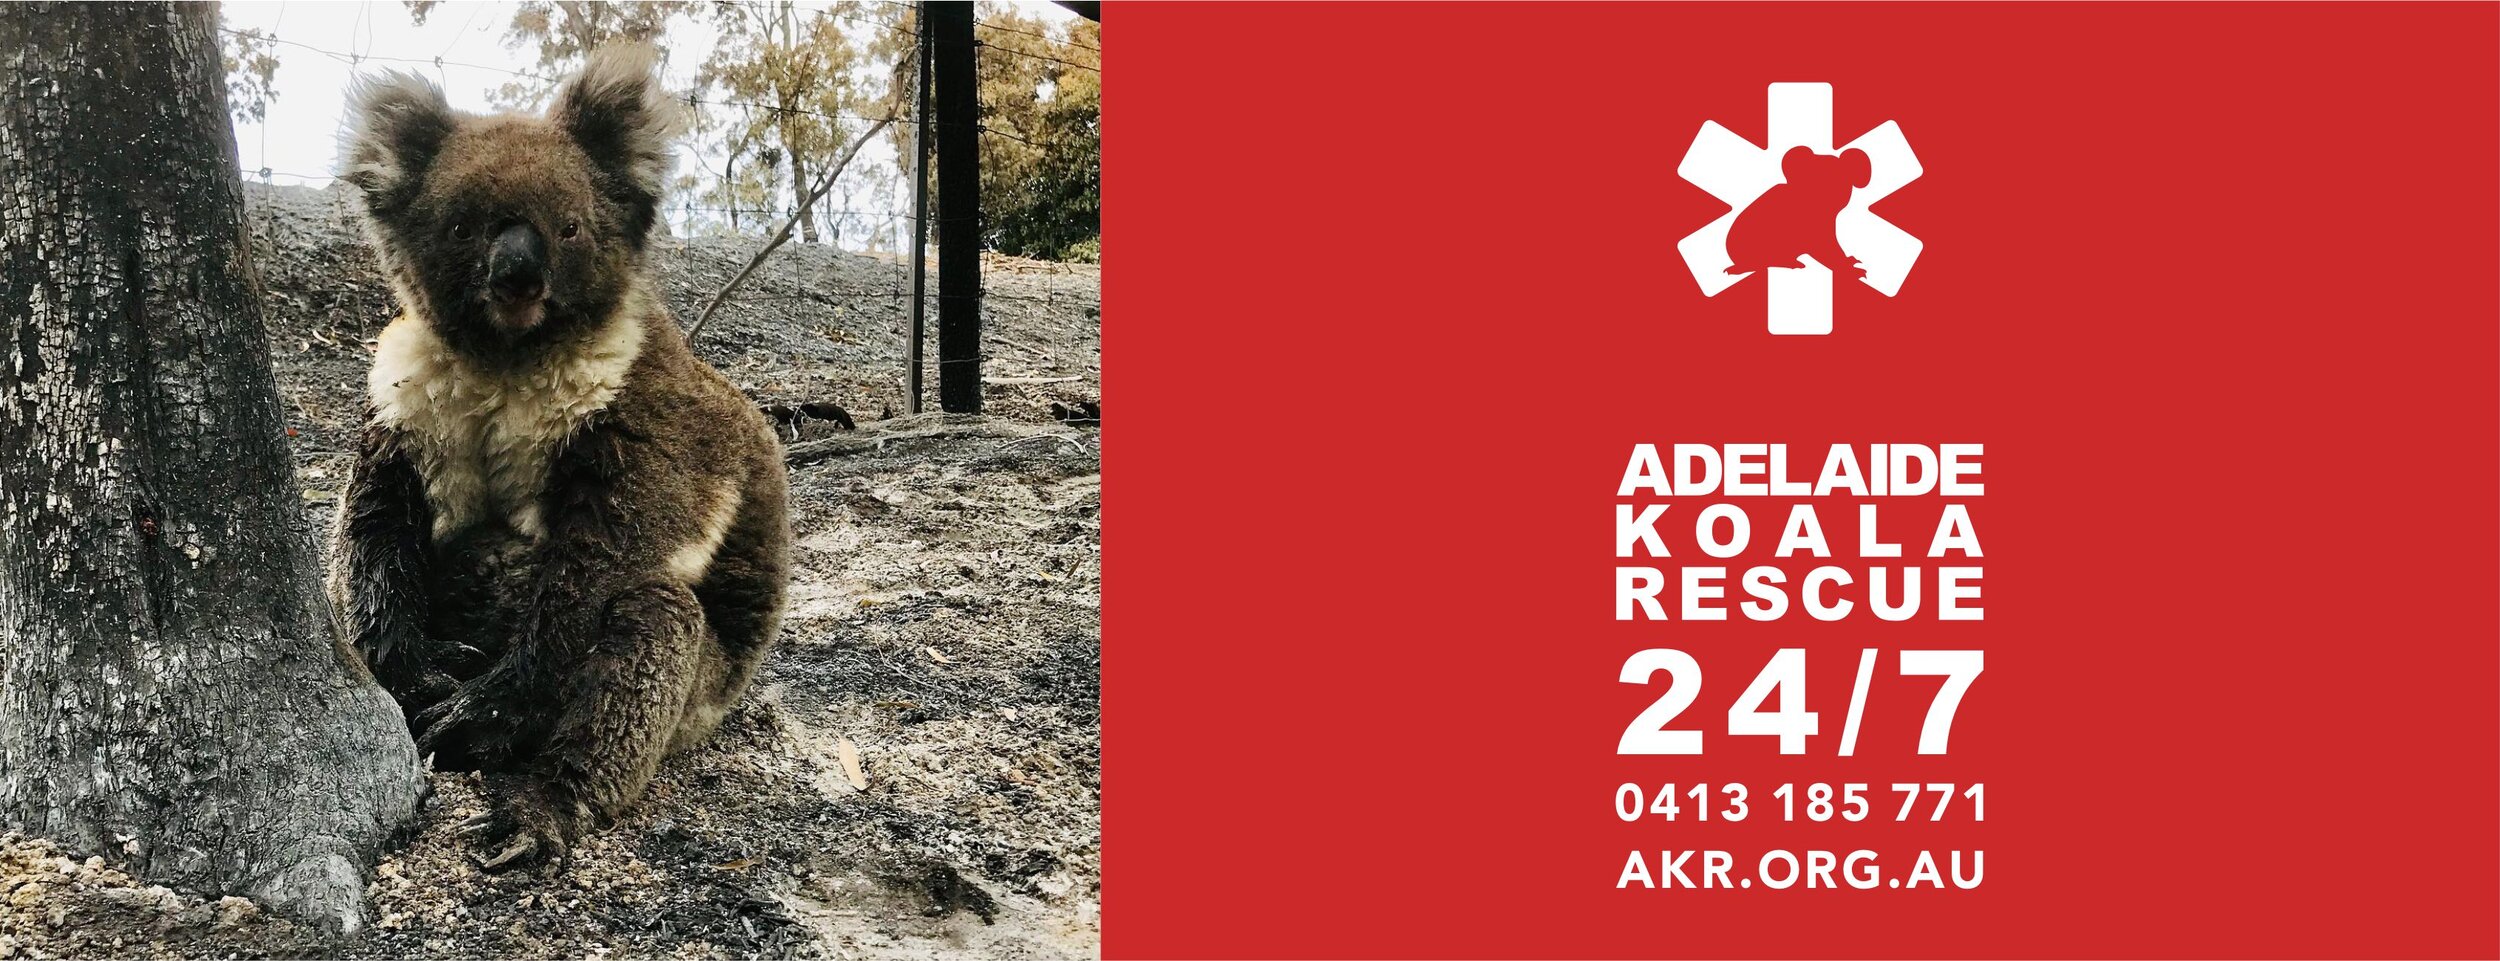 Adelaide Koala Rescue - AKR